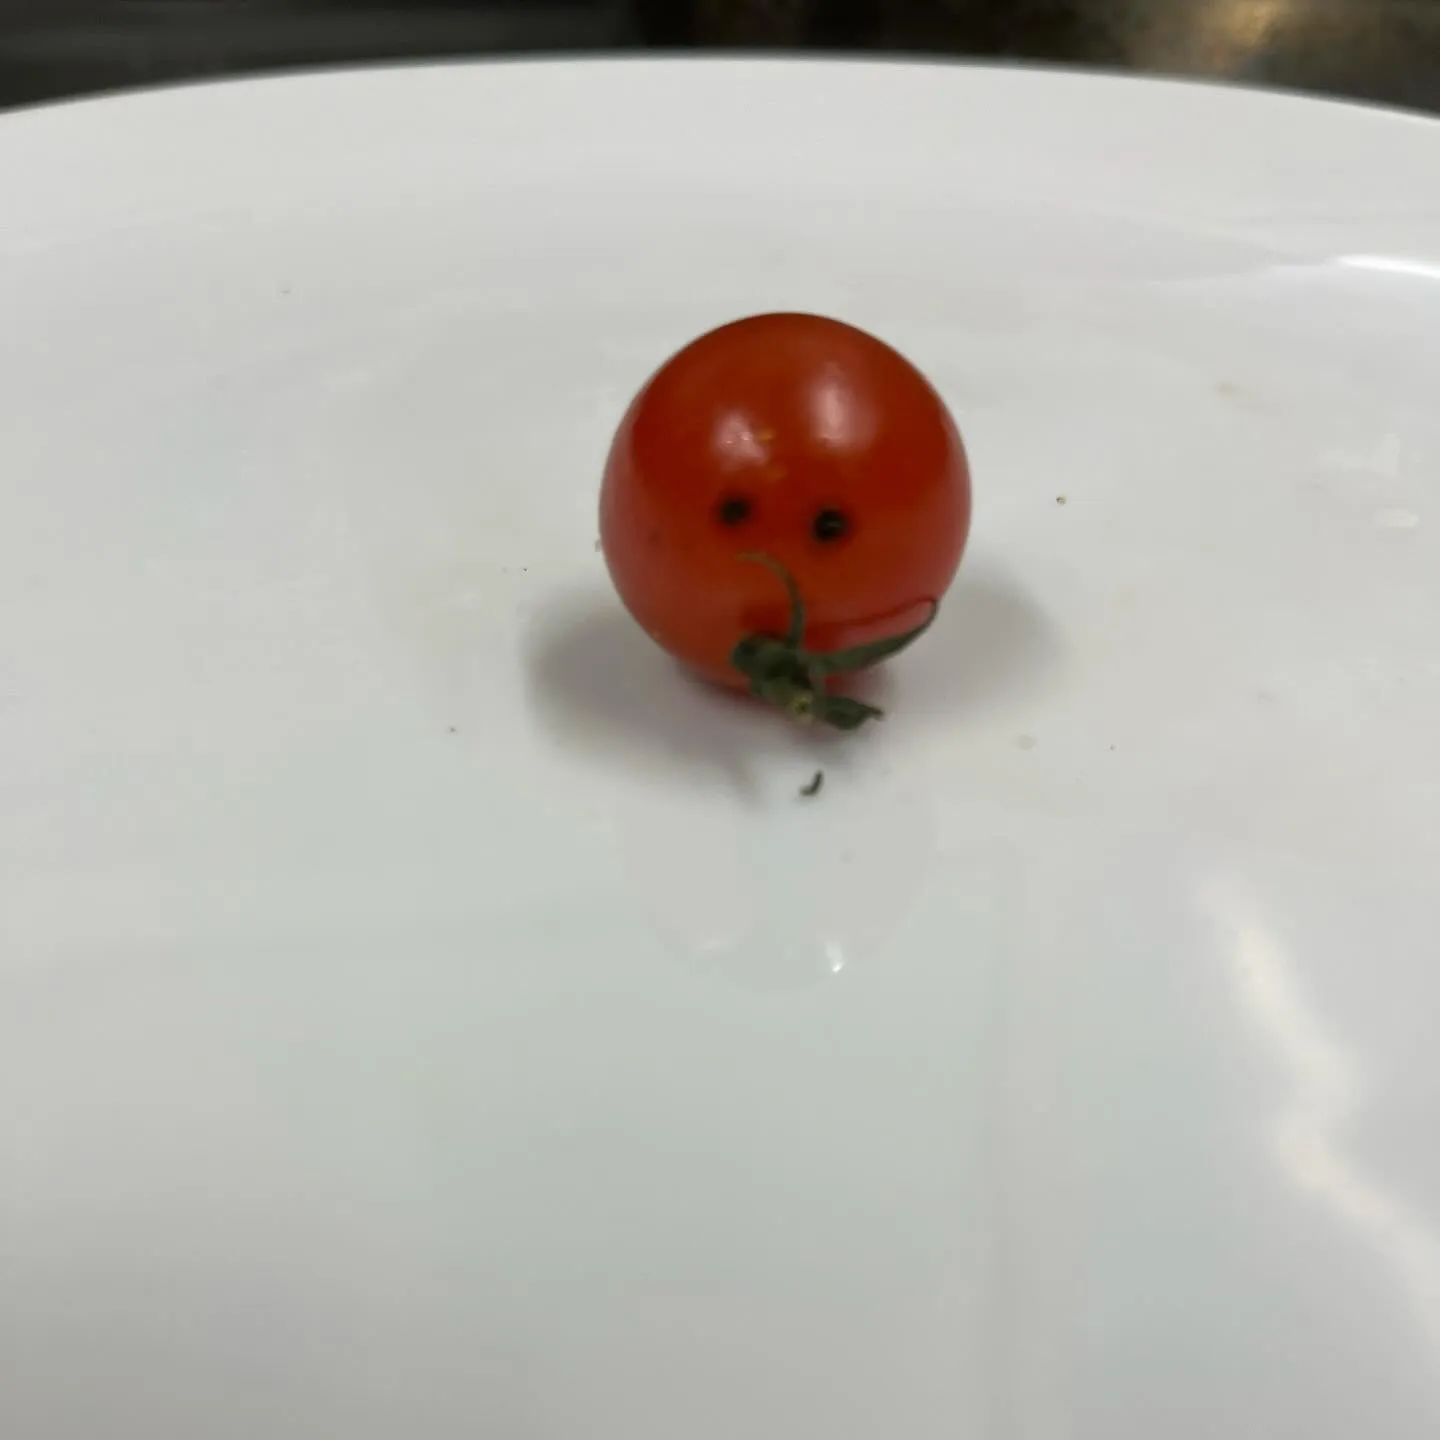 昨日、Barry’sで可愛いミニトマト見つけました💕